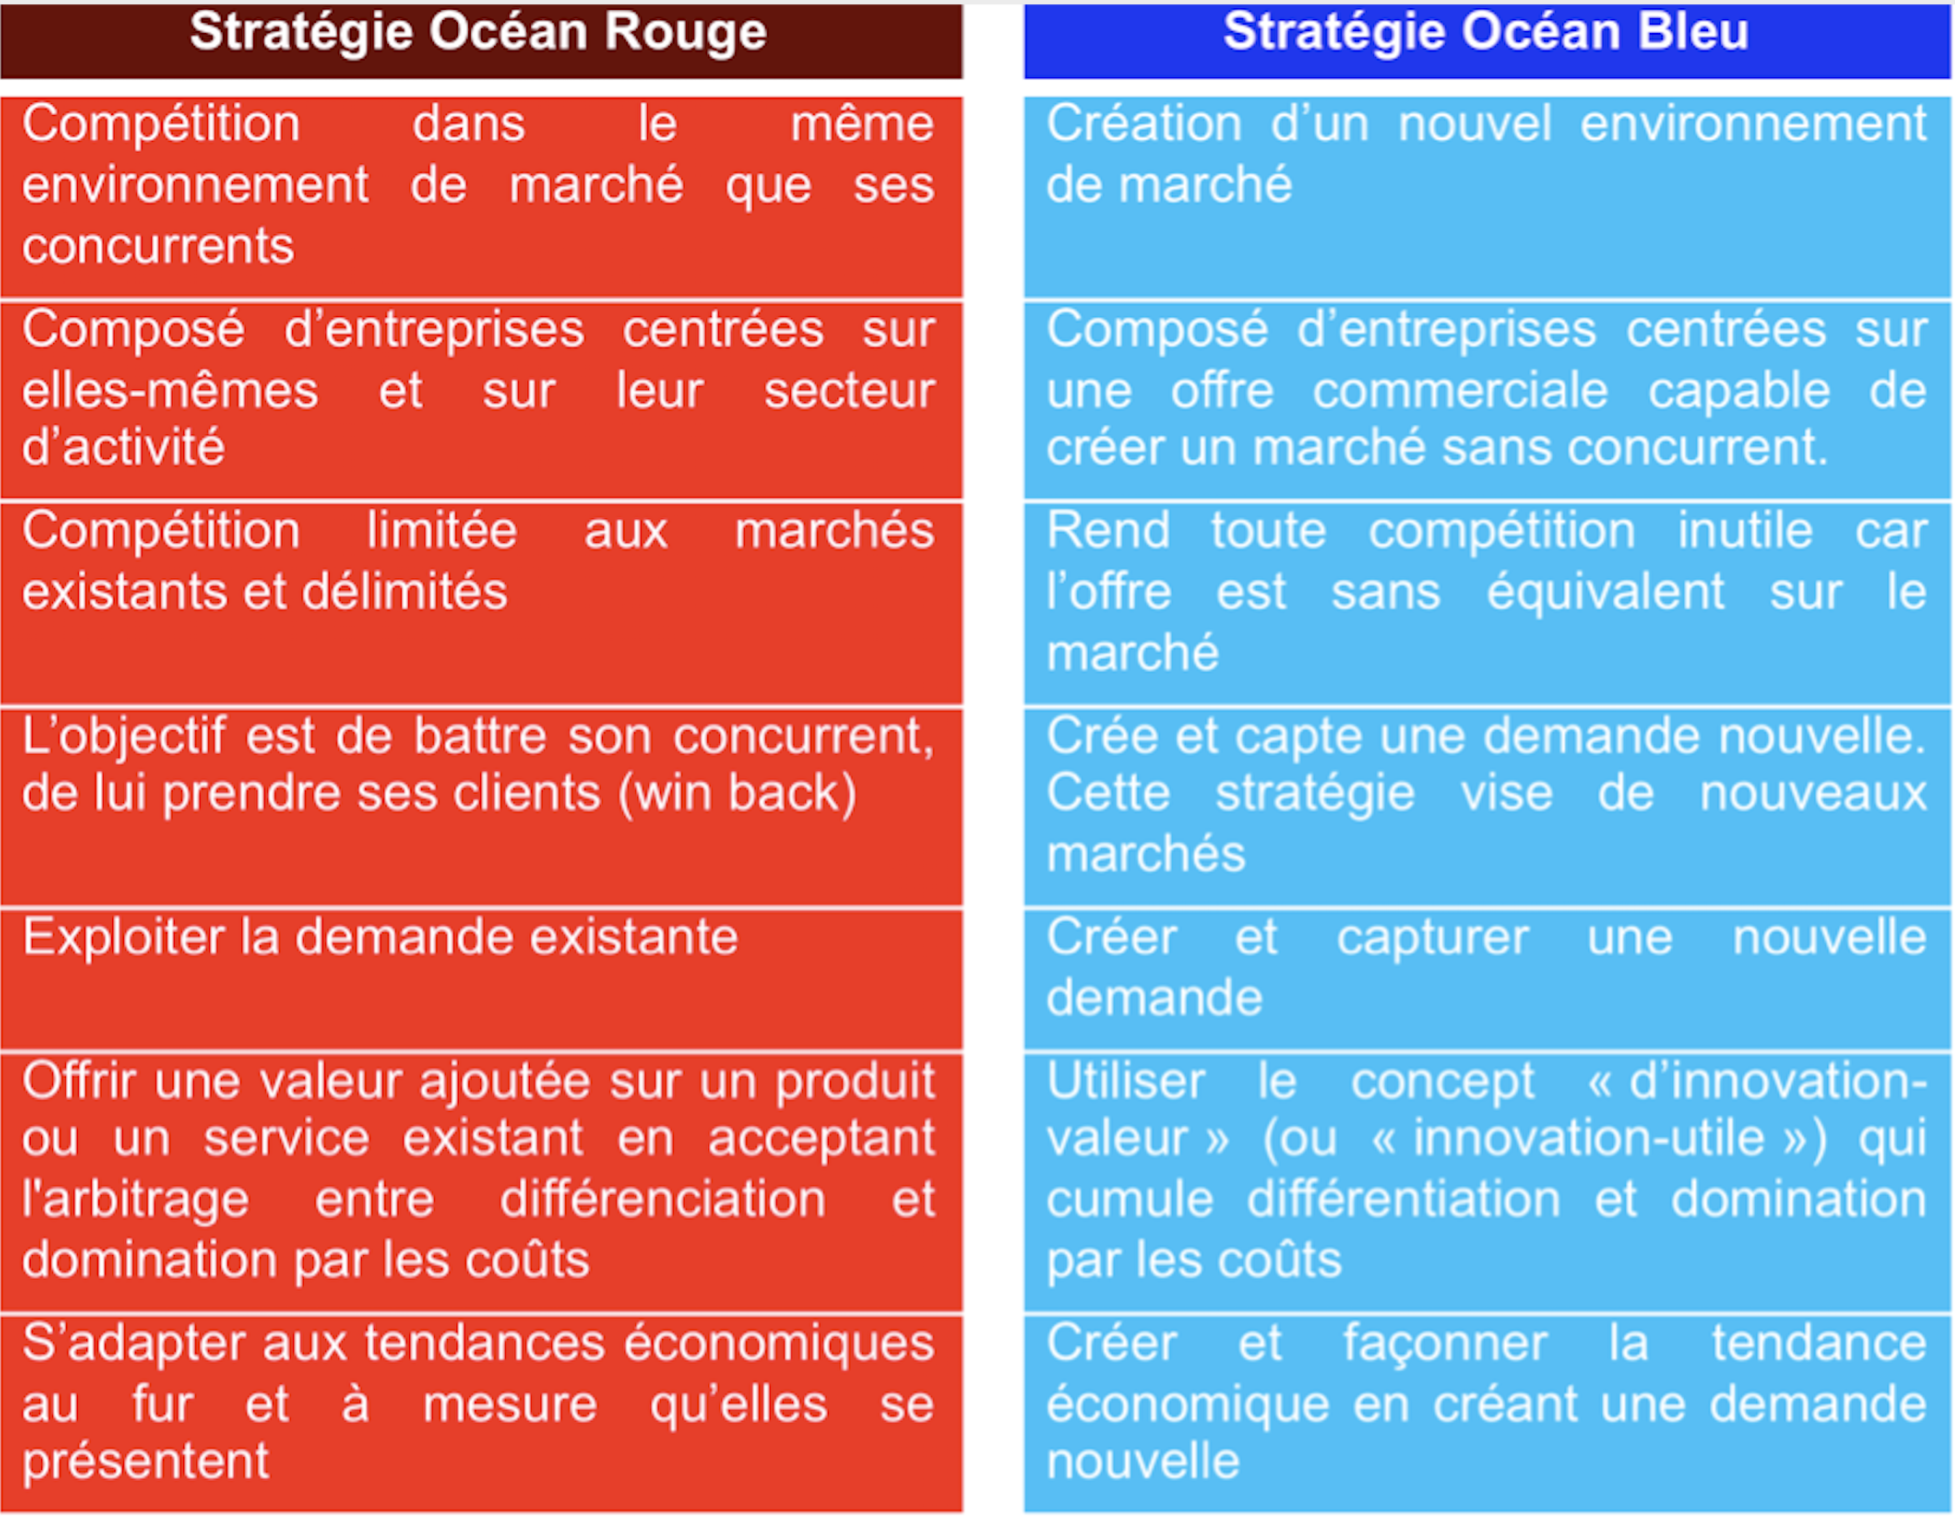 Stratégie « Océan Bleu », « Océan Rouge » - objectifs